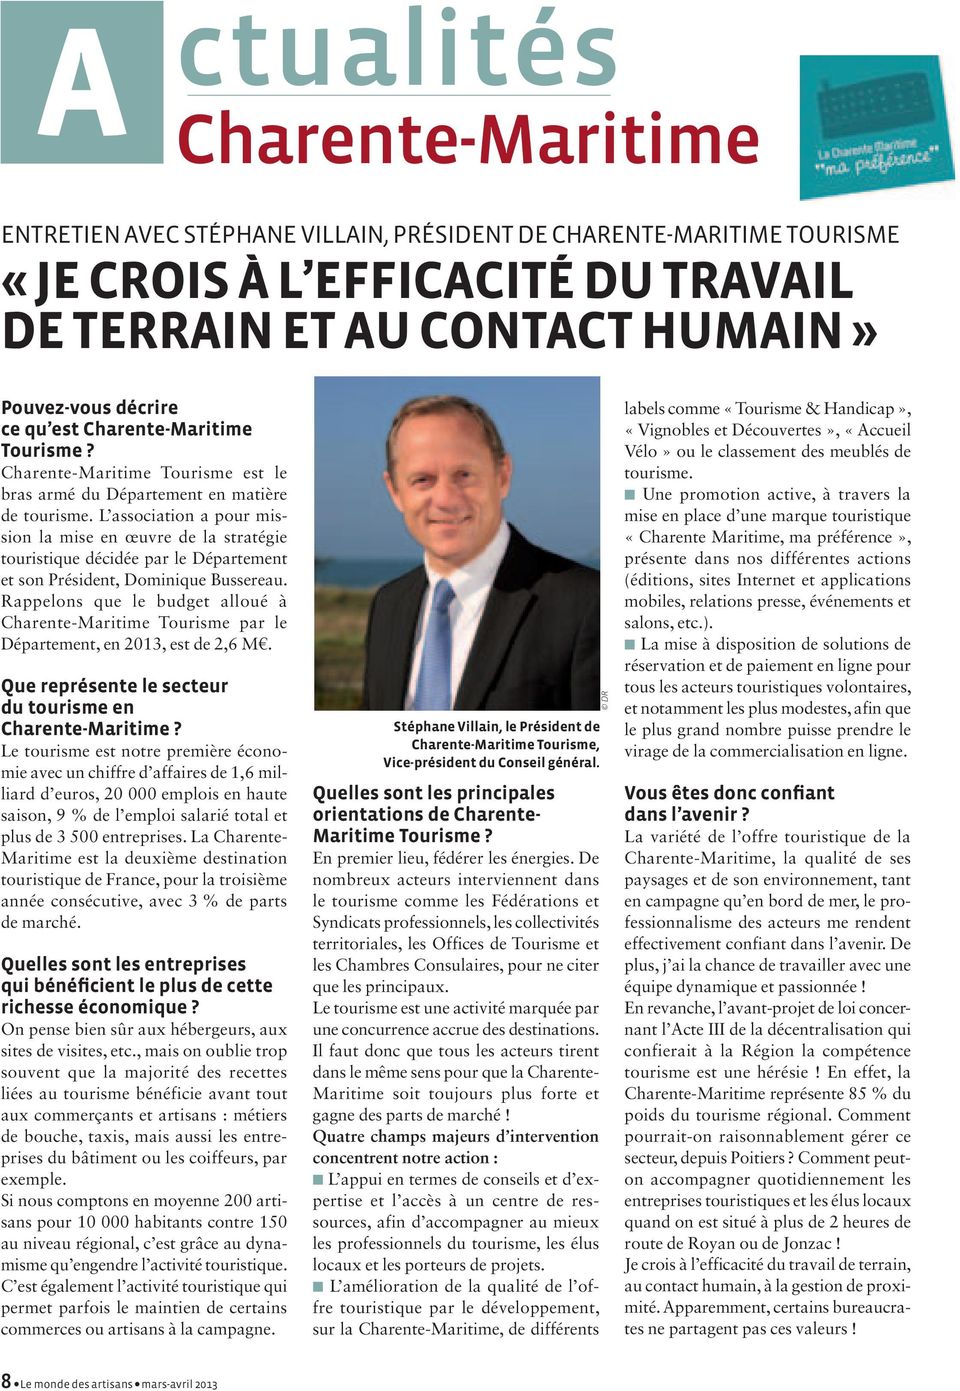 Rappelons que le budget alloué à Charente-Maritime Tourisme par le Département, en 2013, est de 2,6 M.